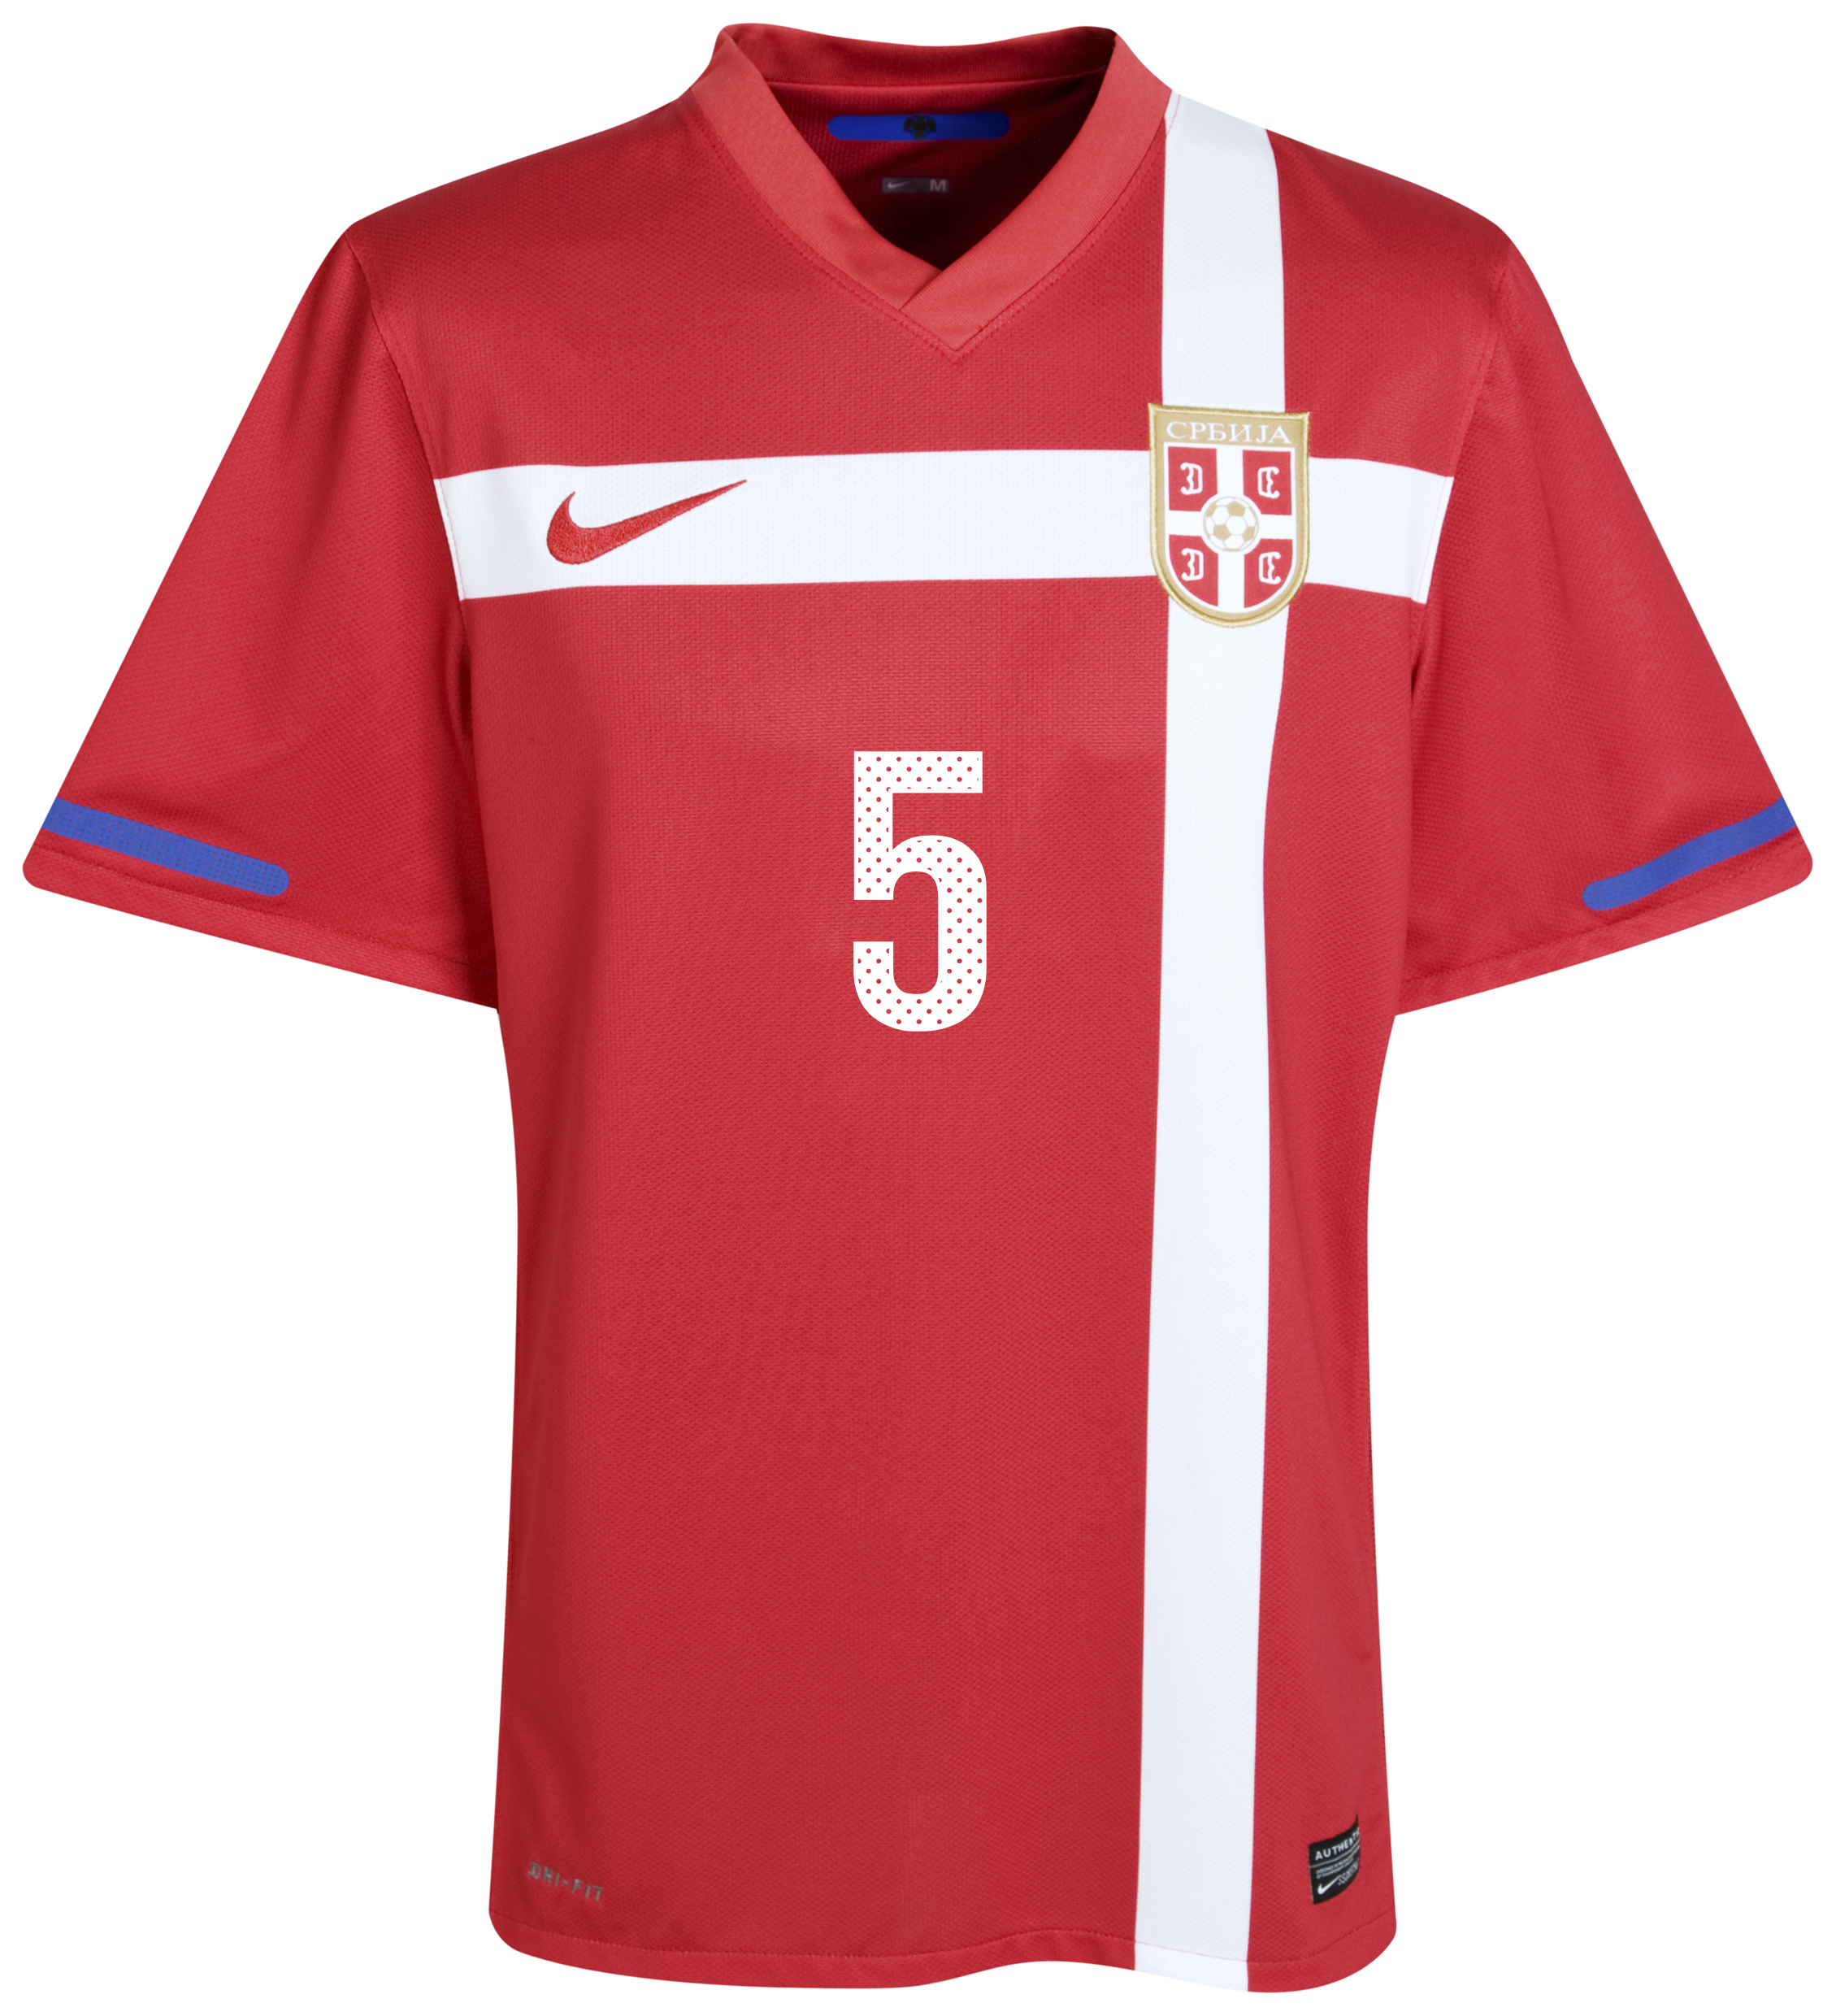 ملابس المنتخبات لكأس العالم2010م Kb-71658a